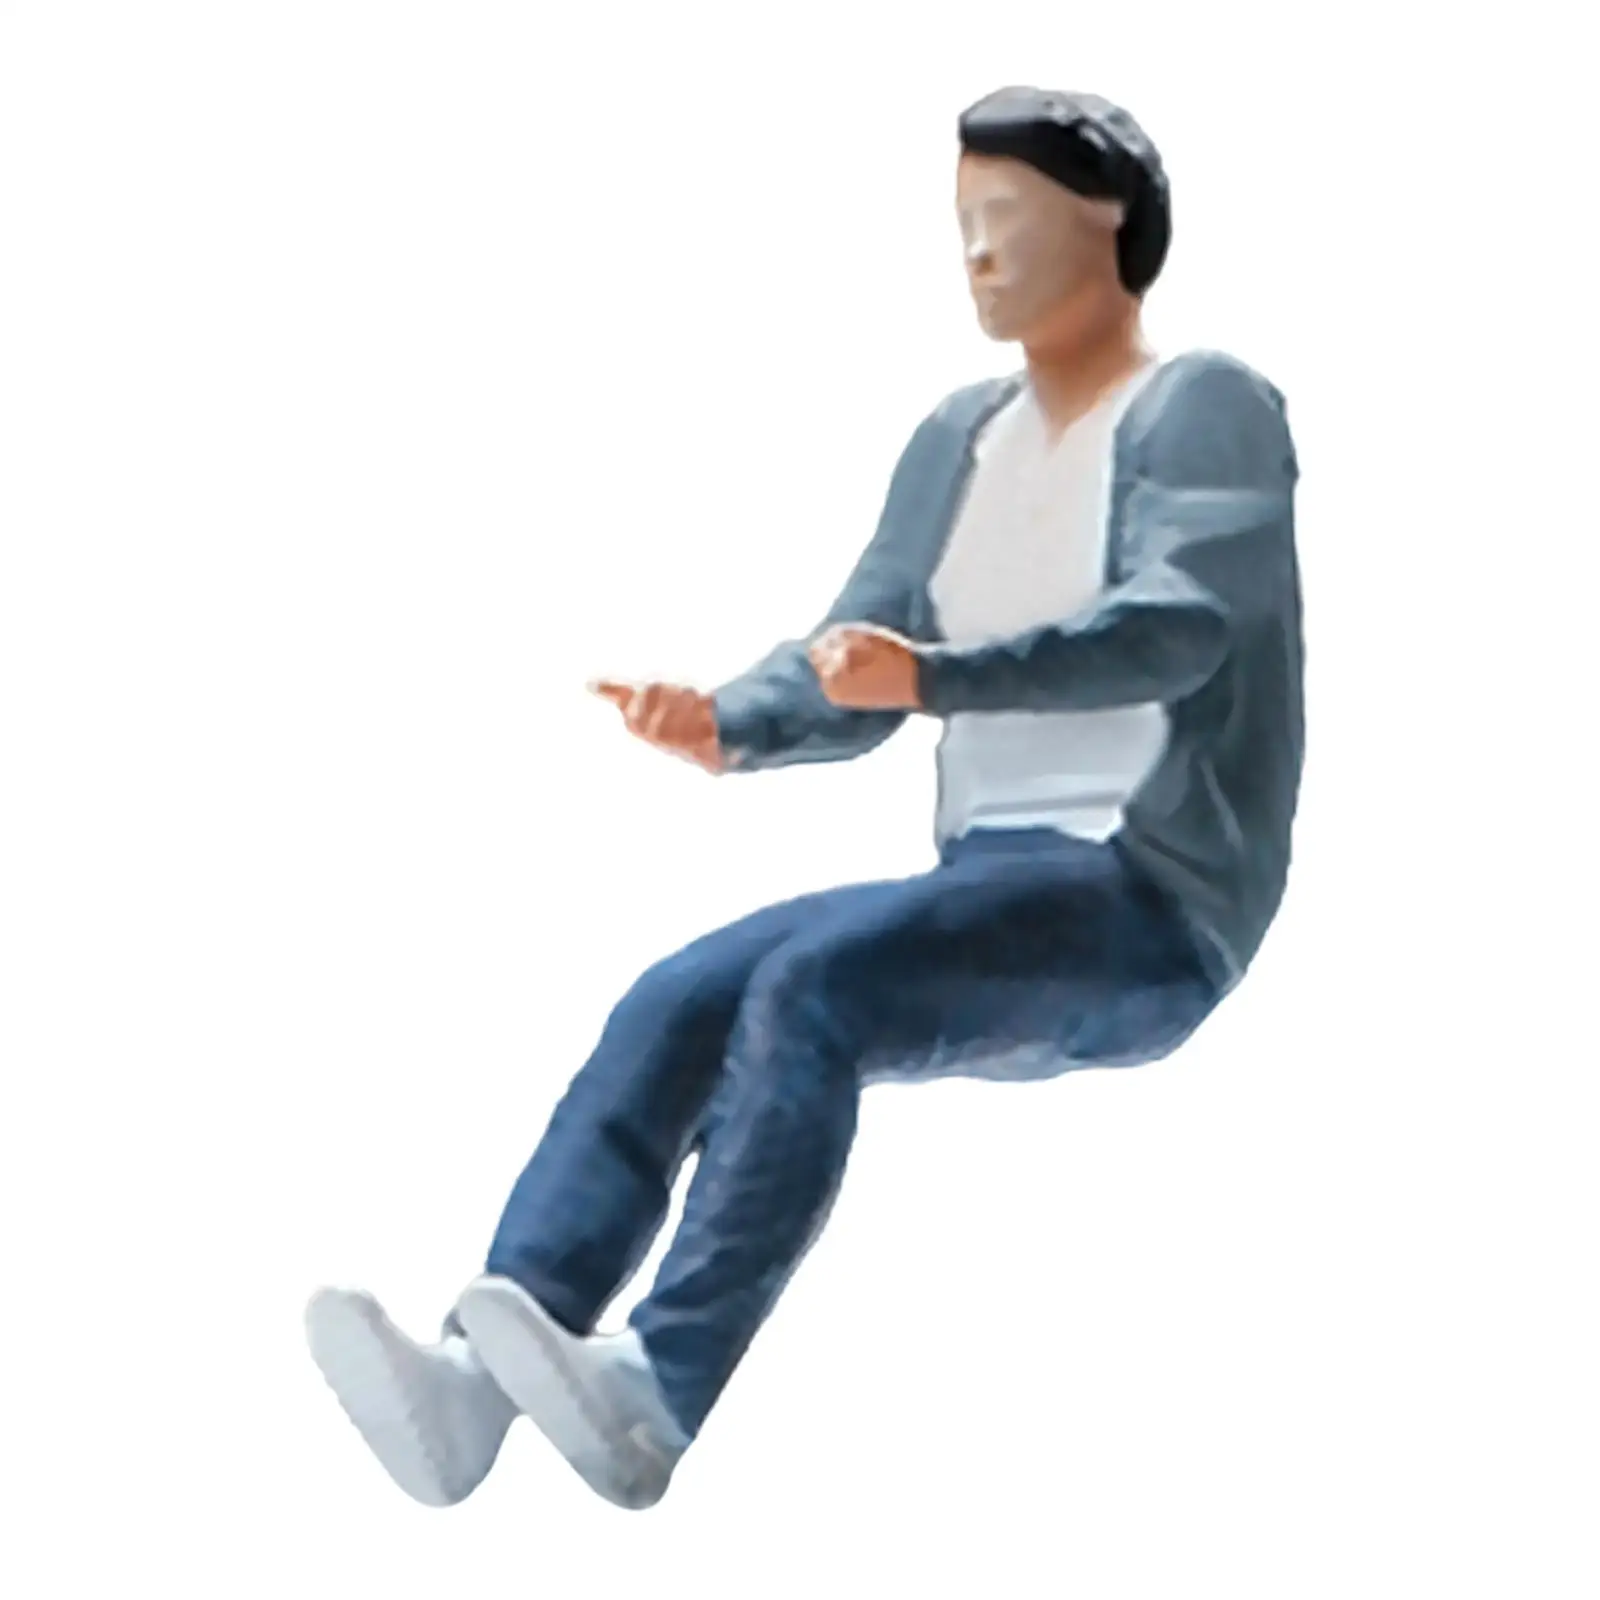 1/64 People Figures Miniature People Figurines for Diorama DIY Scene Decor